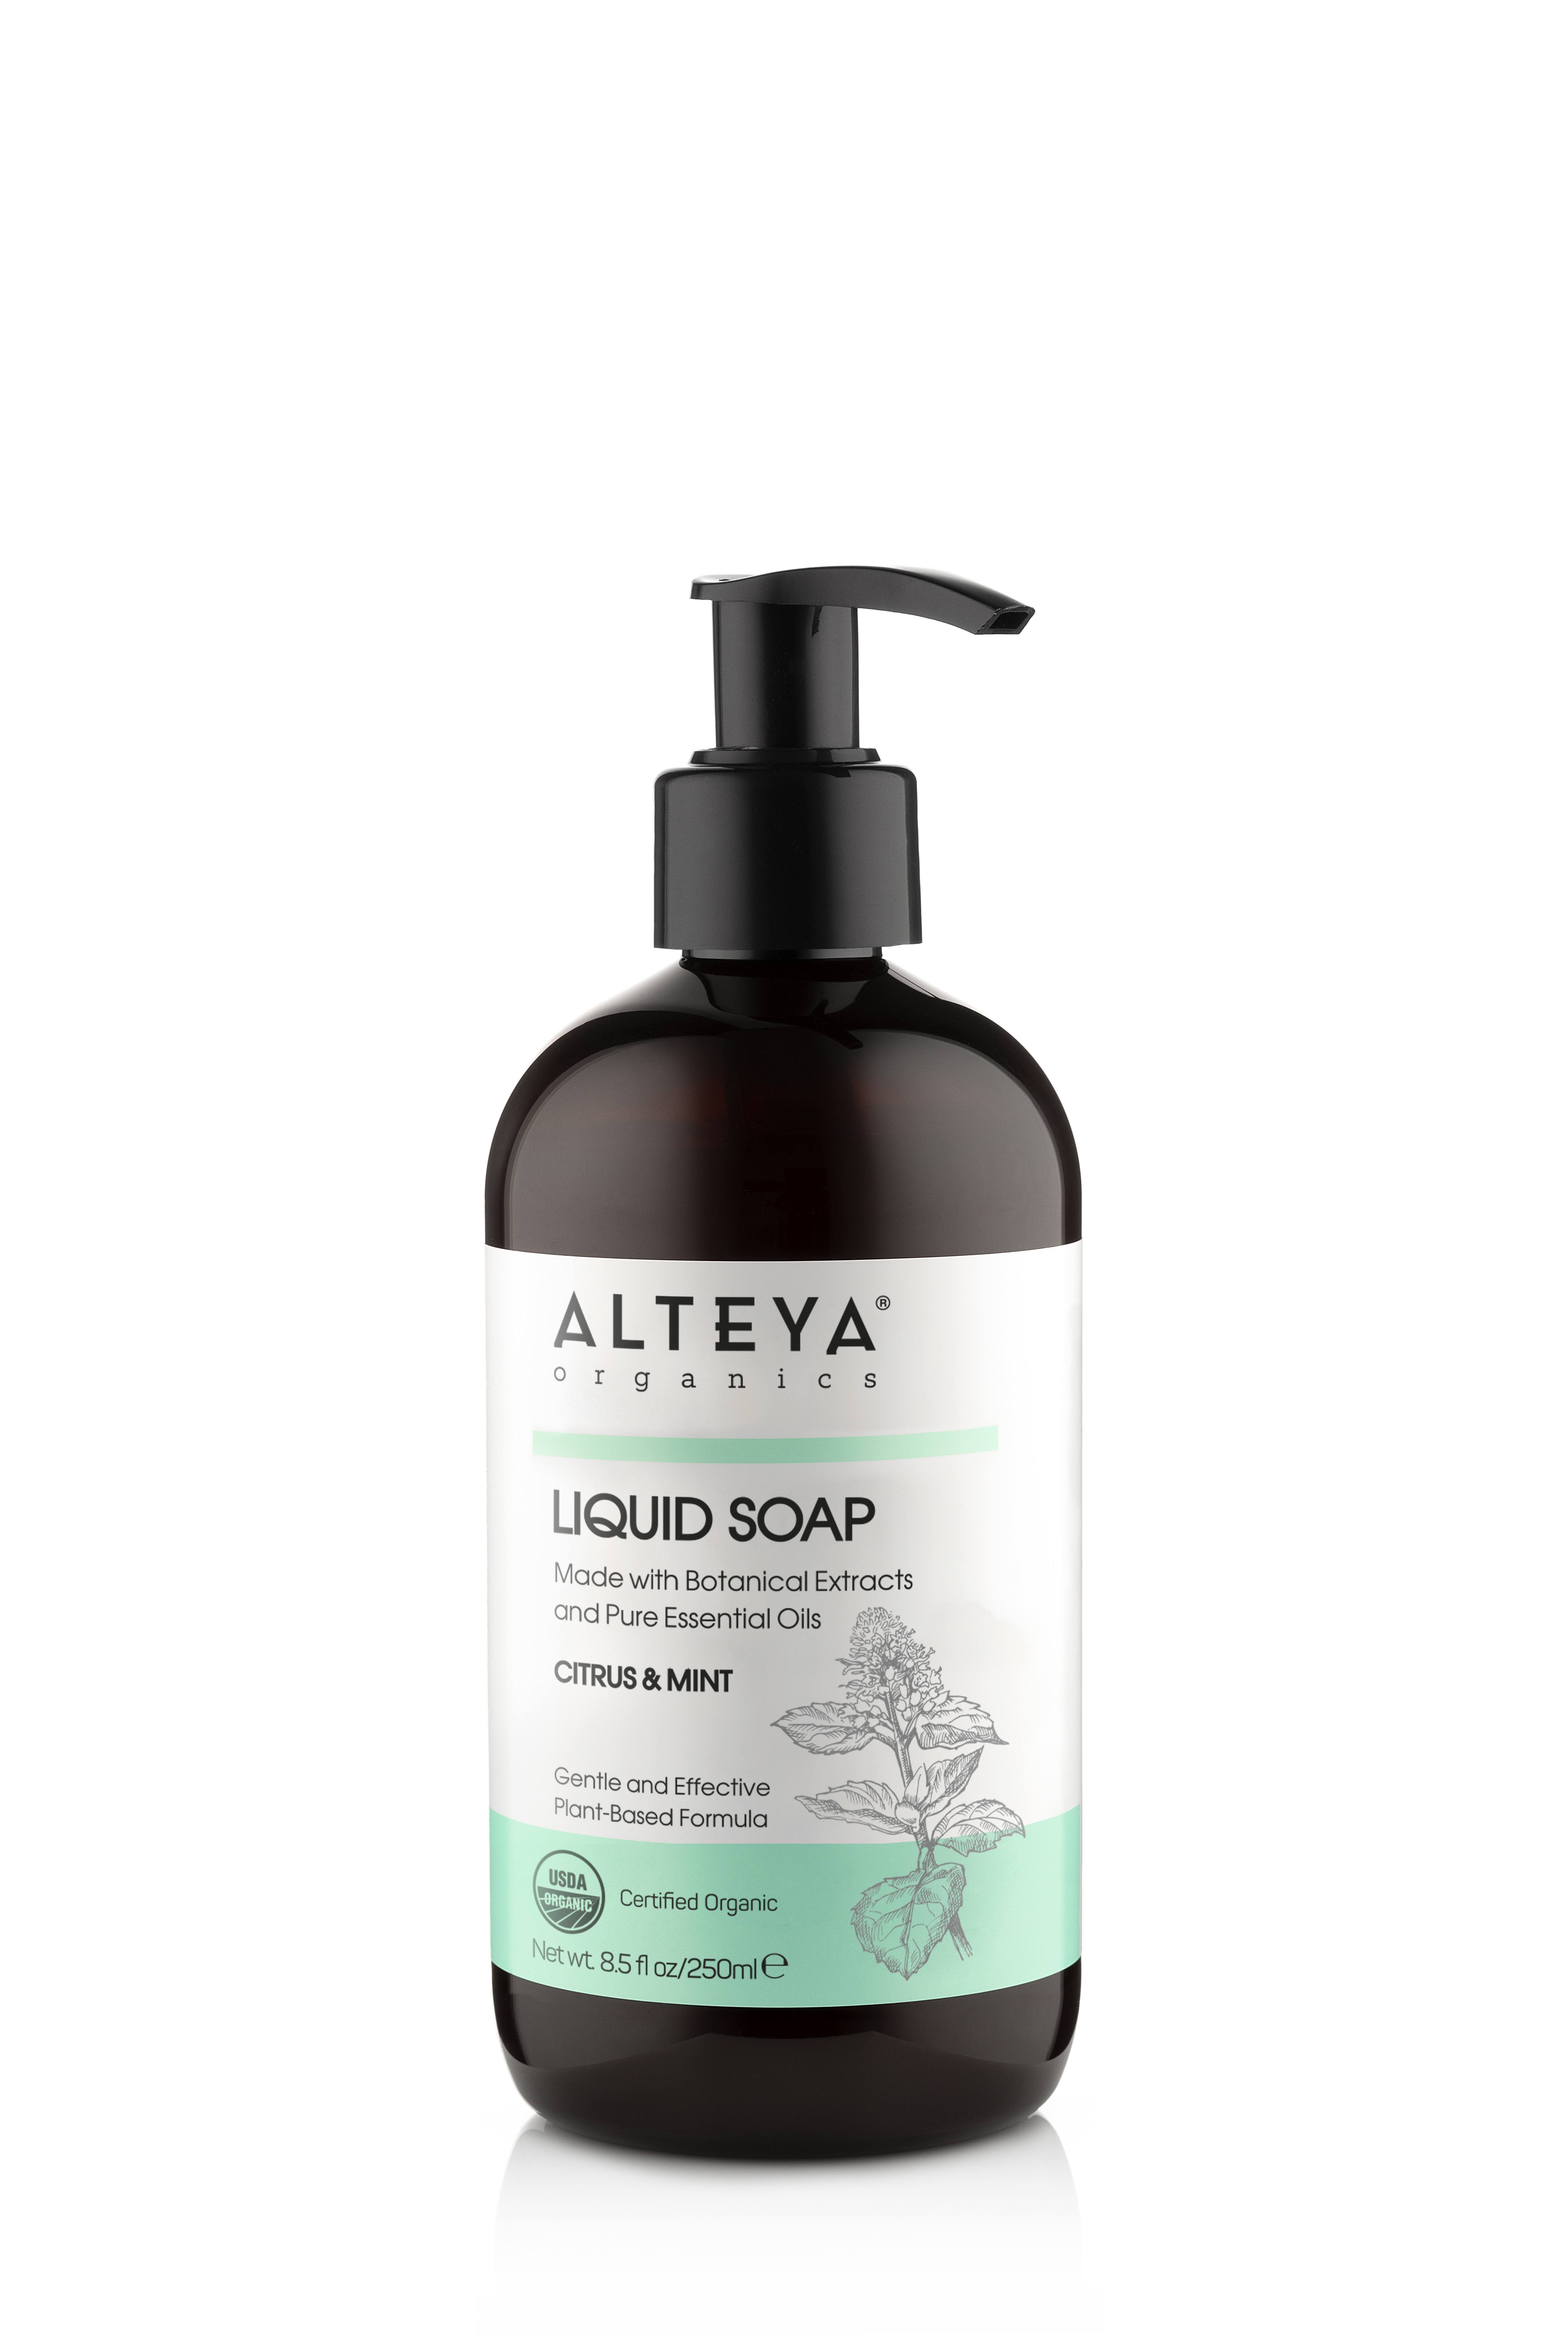 Alteya Organics Liquid Soap - Citrus & Mint 250ml